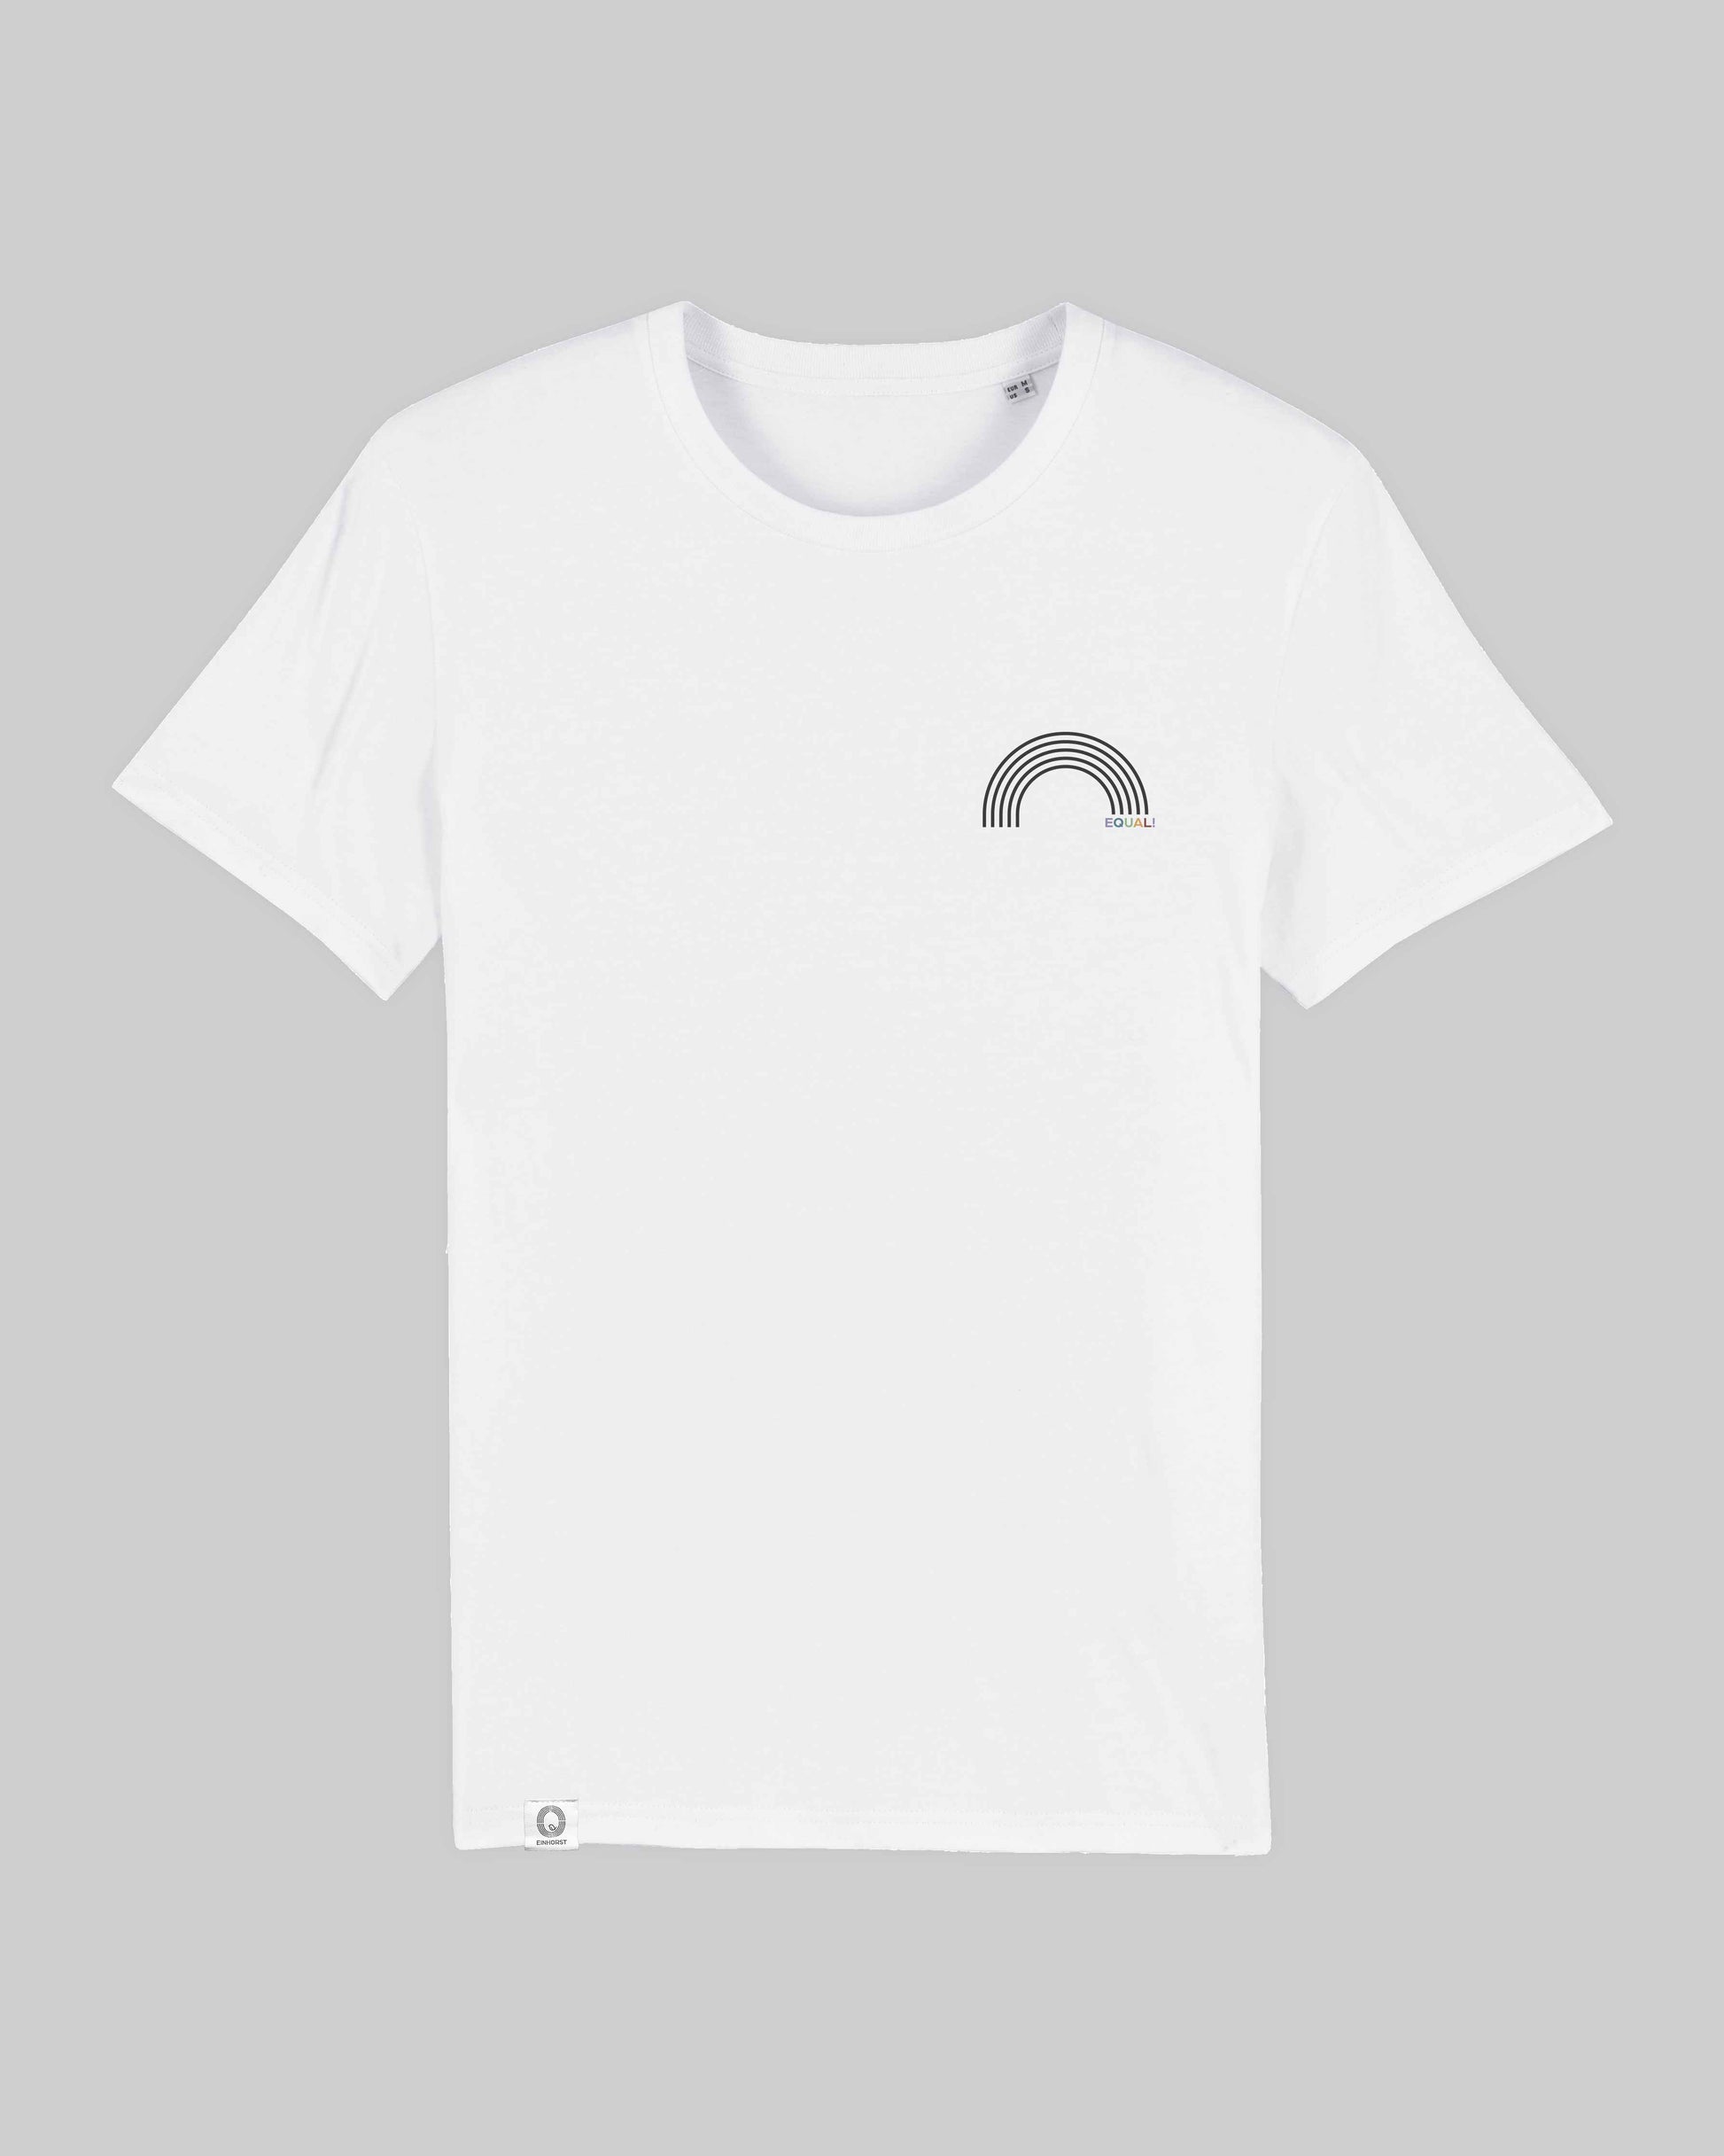 EINHORST® unisex Organic Shirt in weiß mit dem Motiv "equal-Regenbogen" in der Kombination schwarzer Regenbogen mit bunter Schrift, Bild von Shirt von vorne